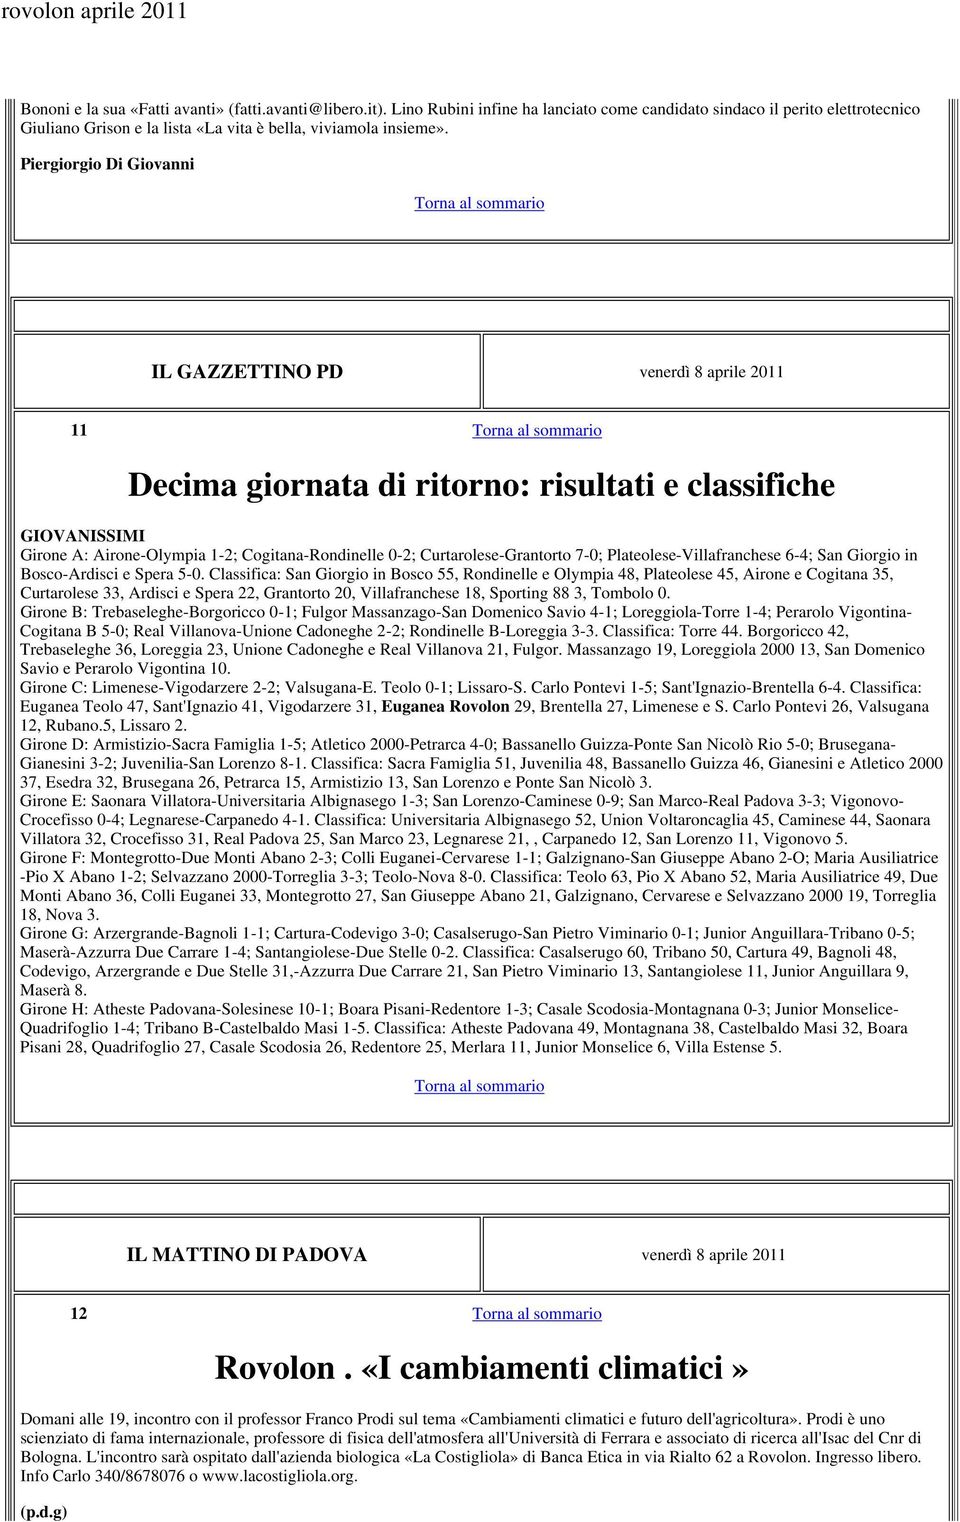 Curtarolese-Grantorto 7-0; Plateolese-Villafranchese 6-4; San Giorgio in Bosco-Ardisci e Spera 5-0.